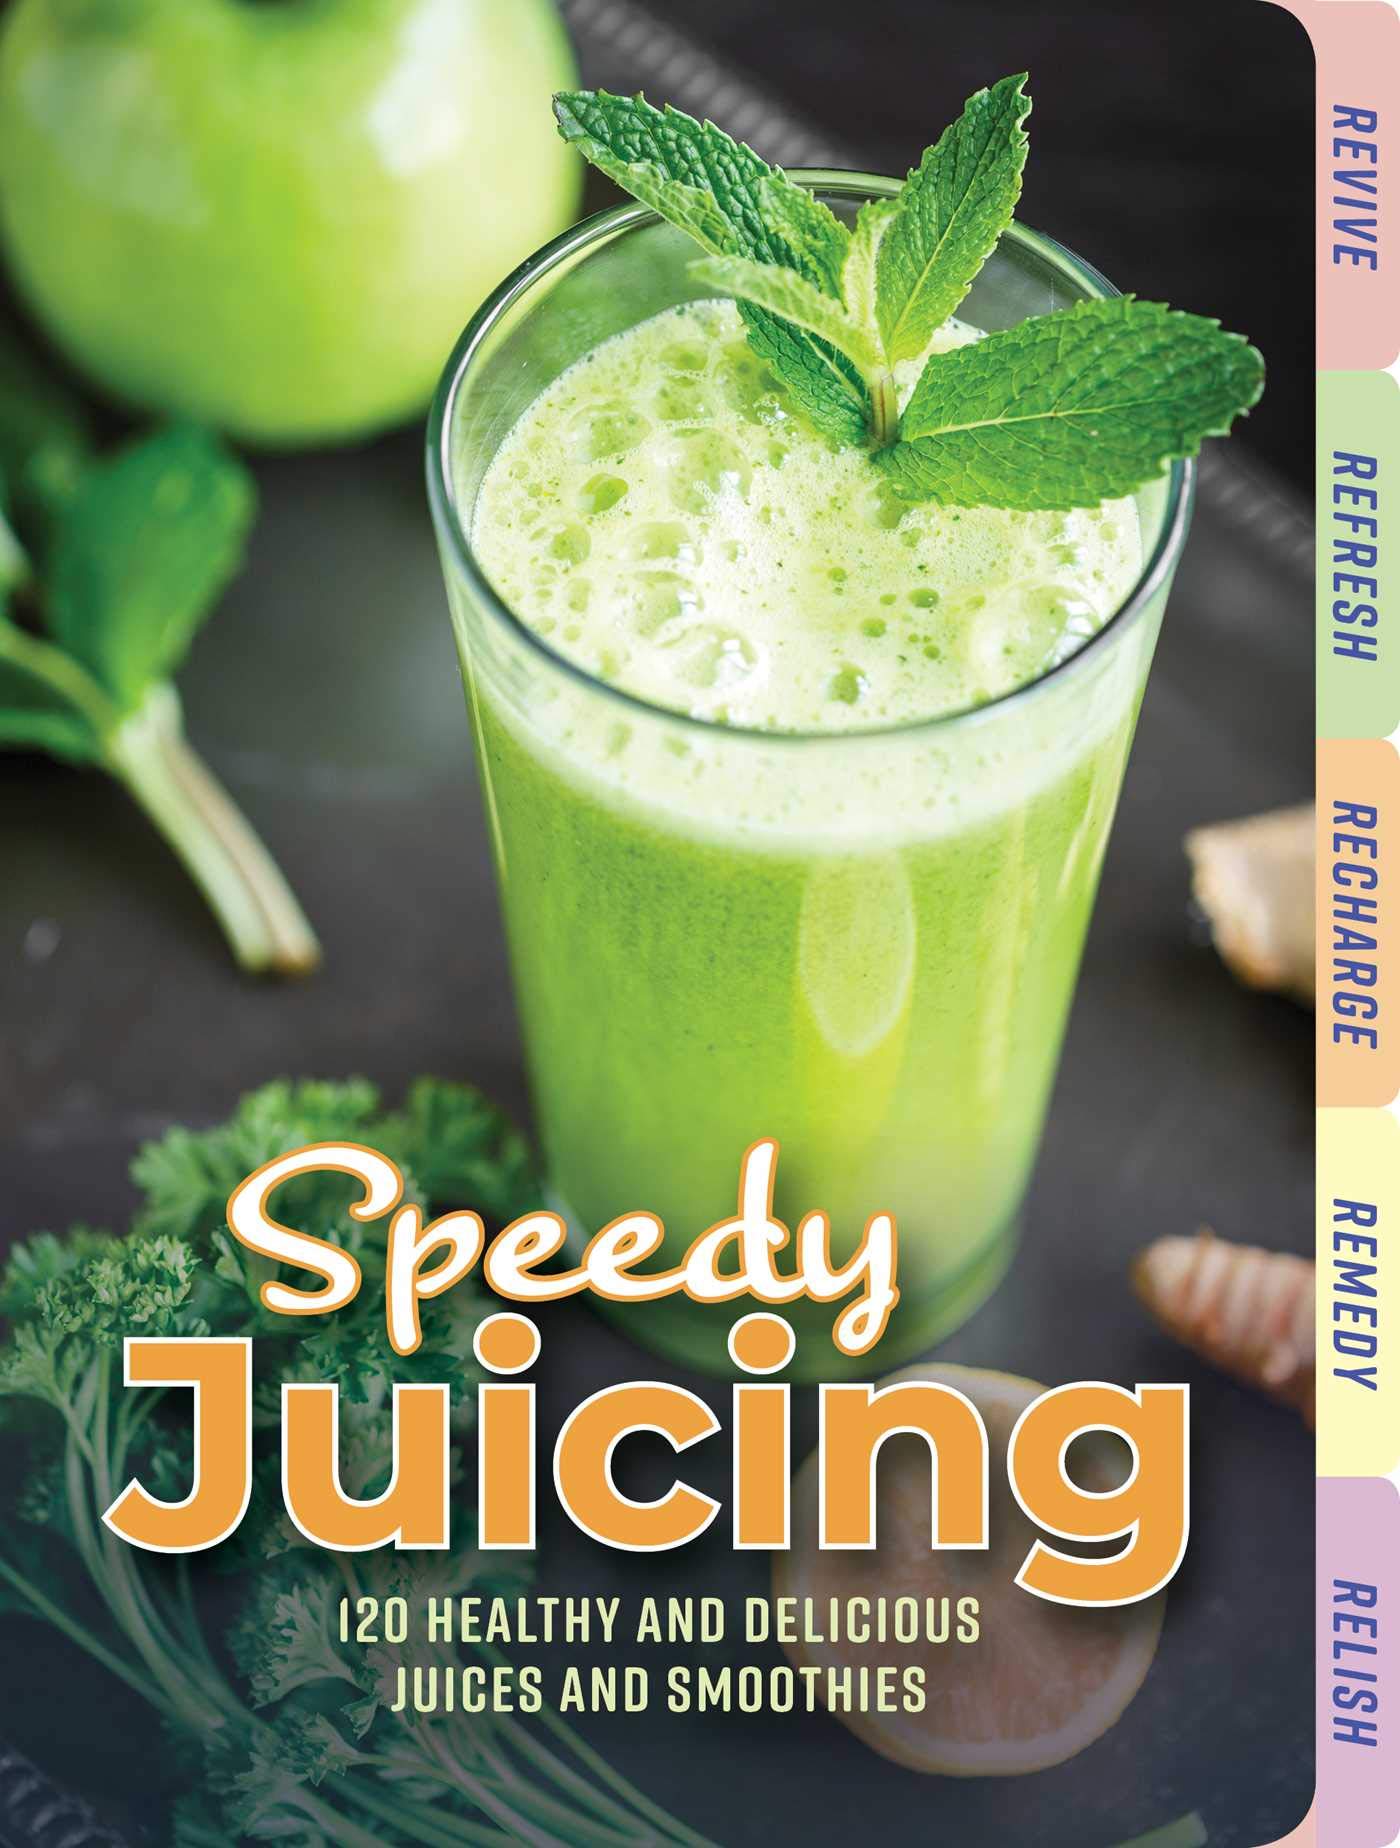 Speedy Juicing: 120 Healthy and Delicious Juices and Smoothies: 120 Healthy and Delicious Juices